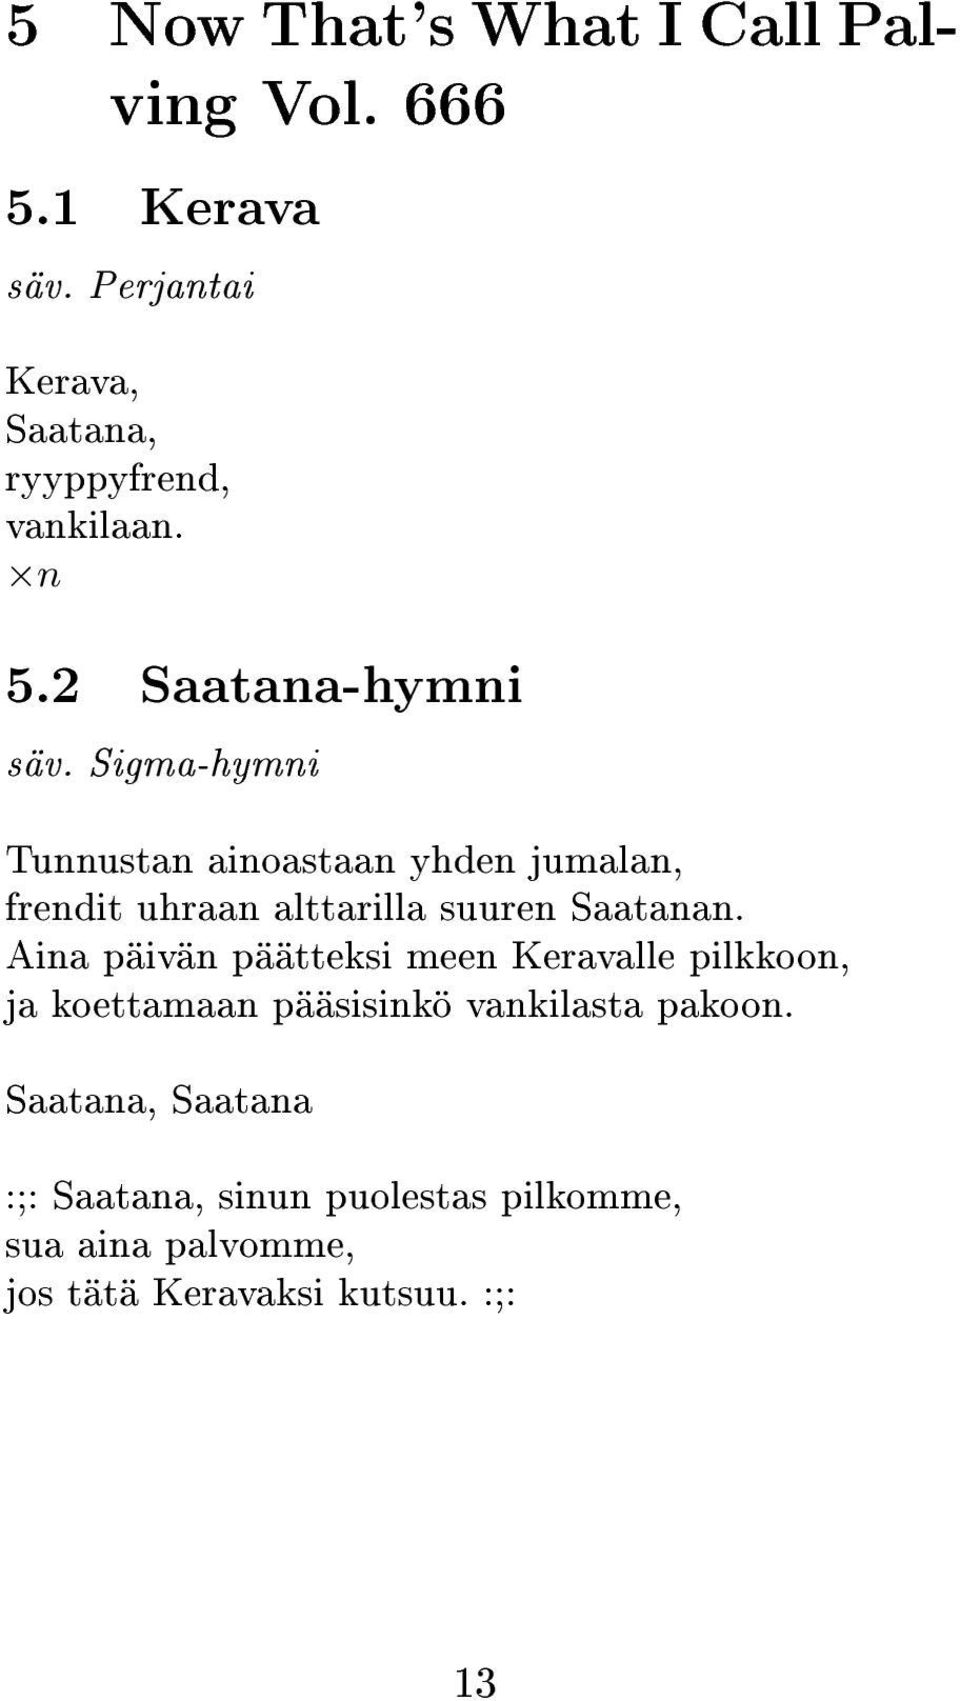 Sigma-hymni Tunnustan ainoastaan yhden jumalan, frendit uhraan alttarilla suuren Saatanan.